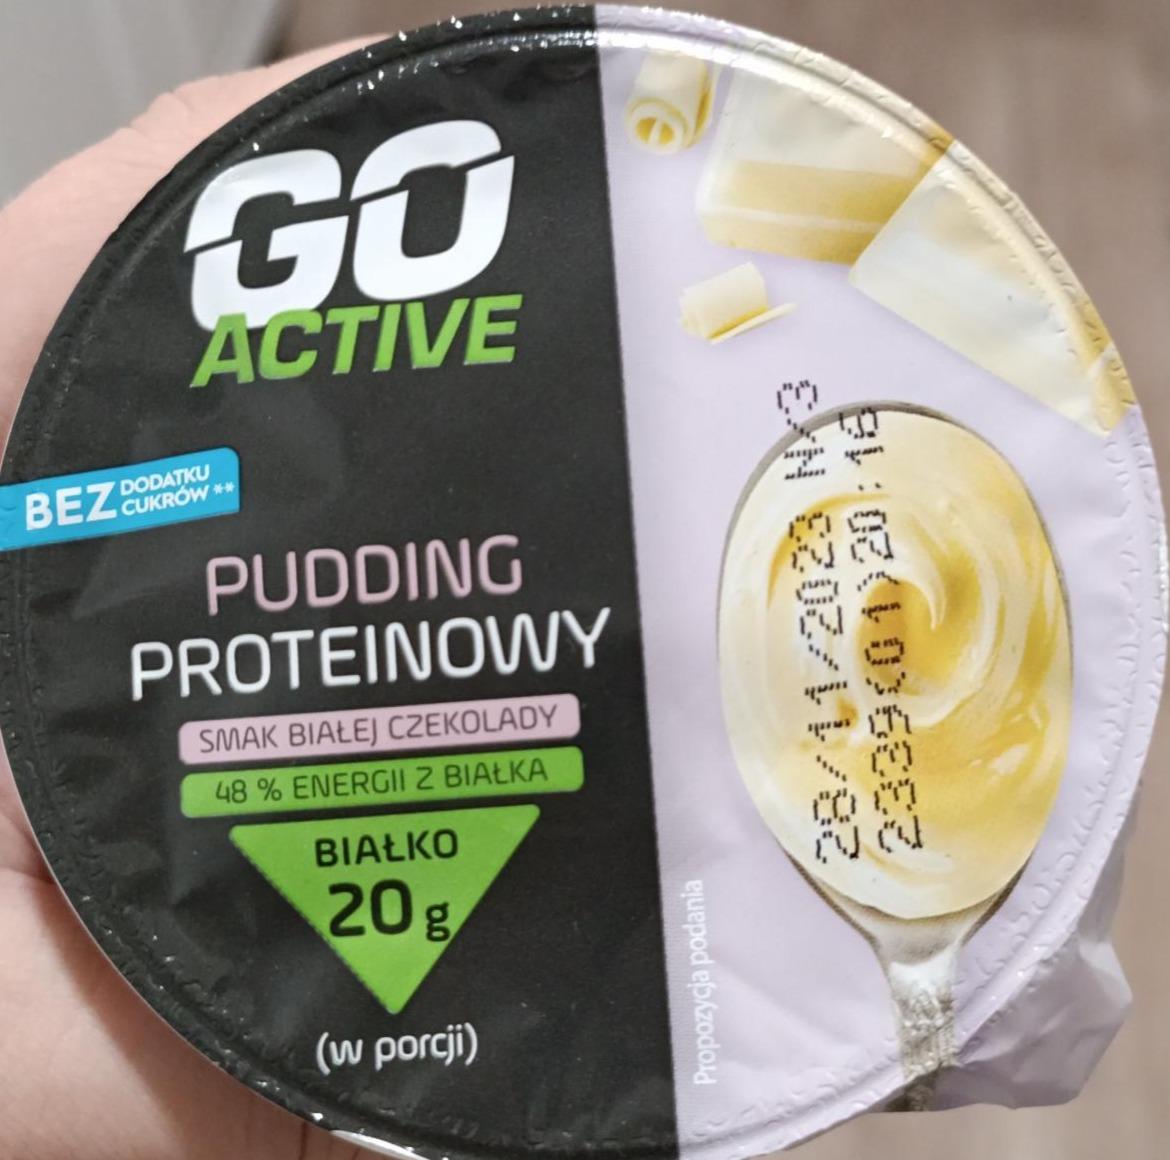 Фото - Pudding proteinowy smak białej czekolady Go Active